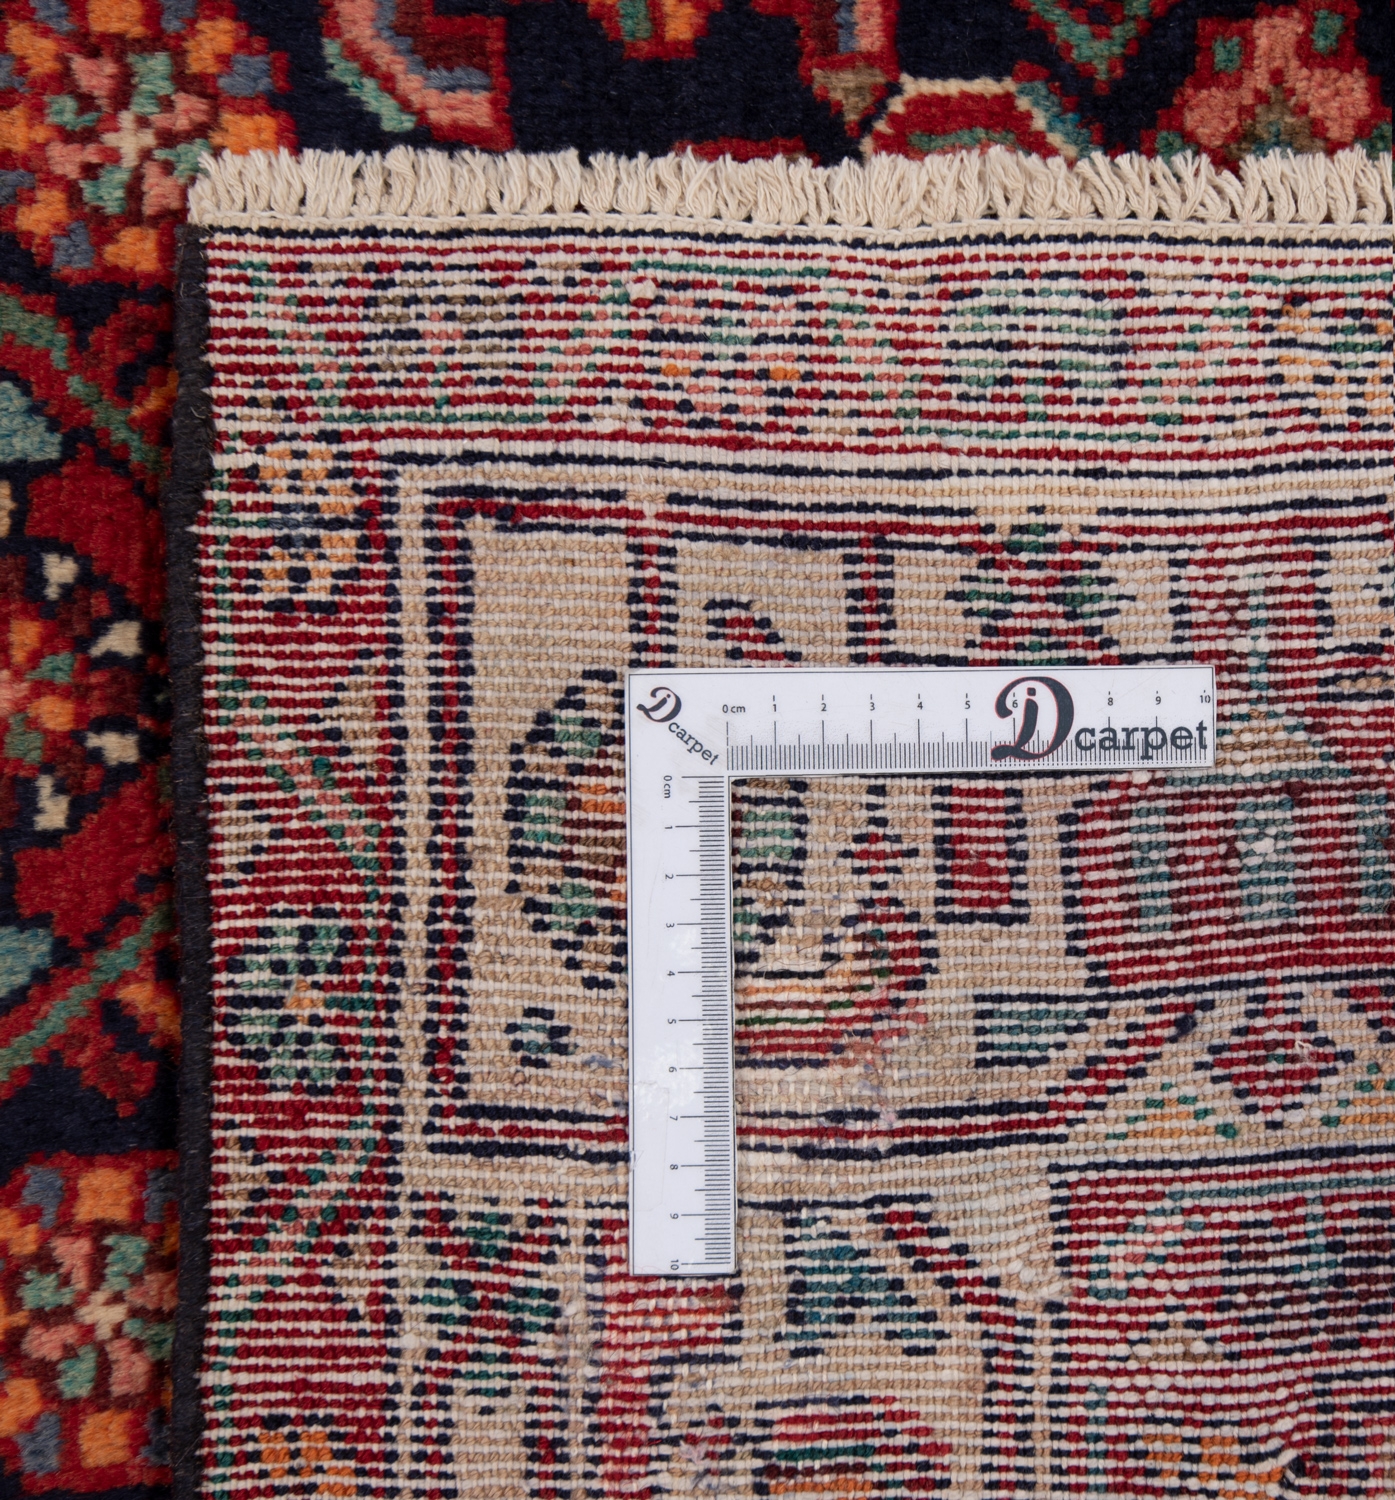 Hamedan Persian Rug